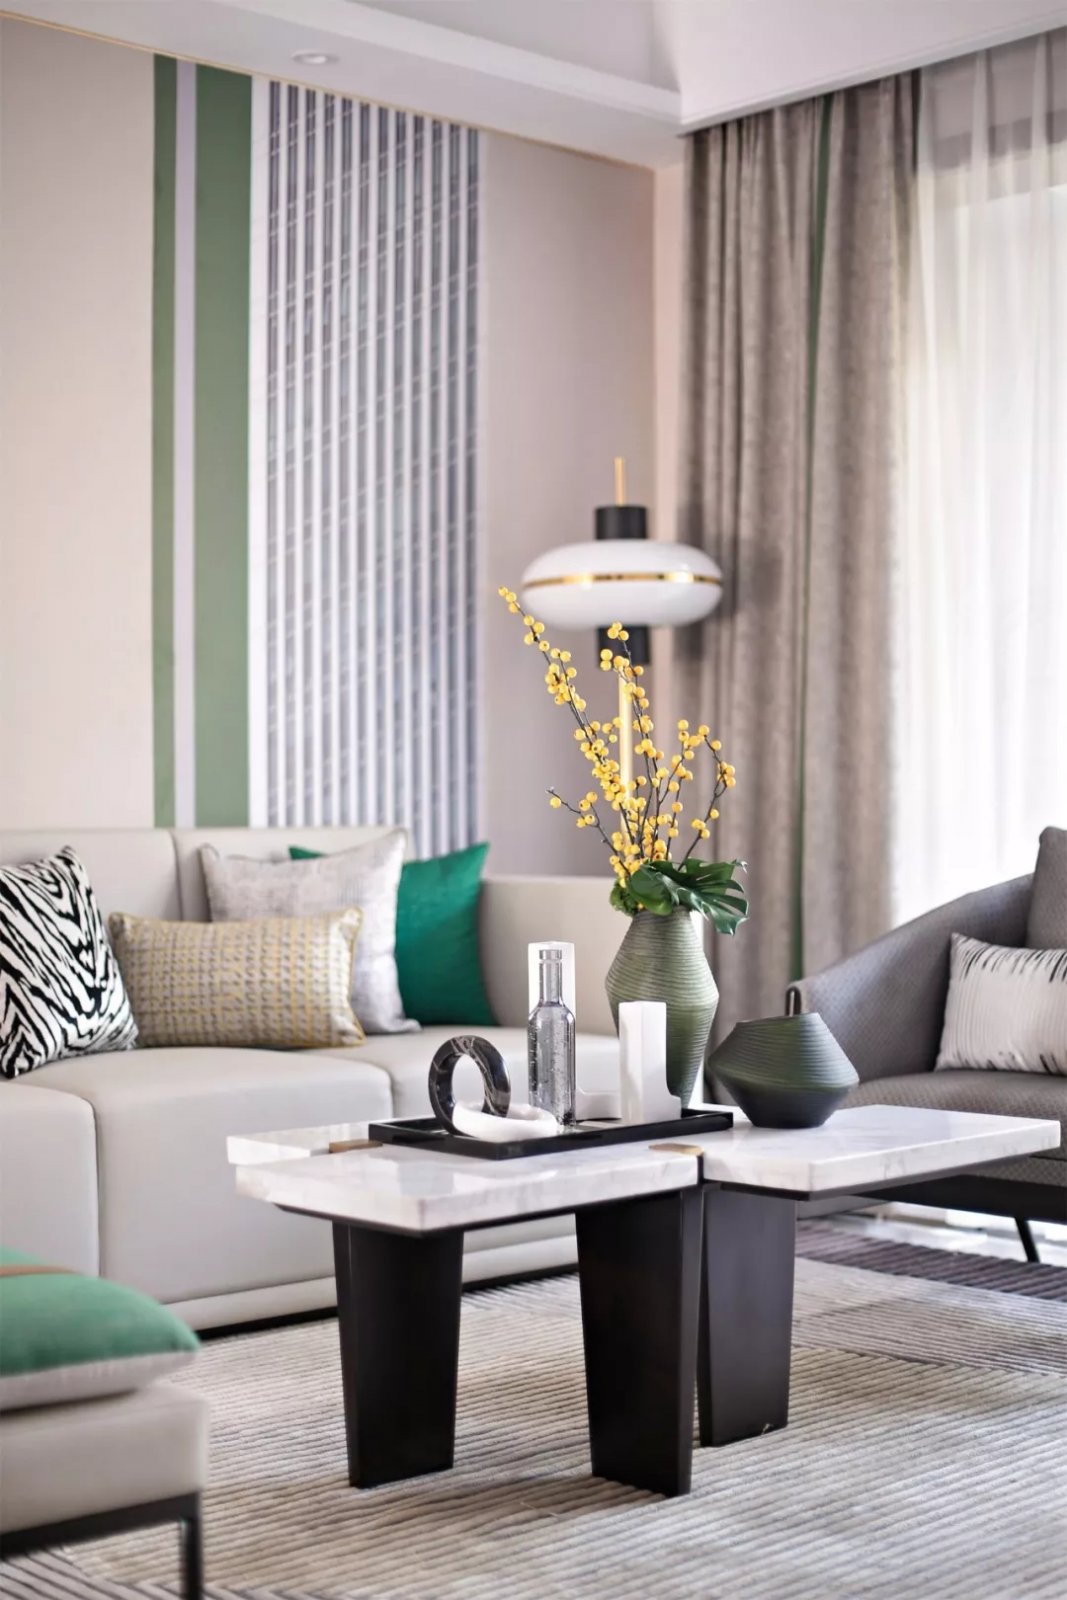 轻奢现代风格室内家装案例效果图-客厅茶几沙发